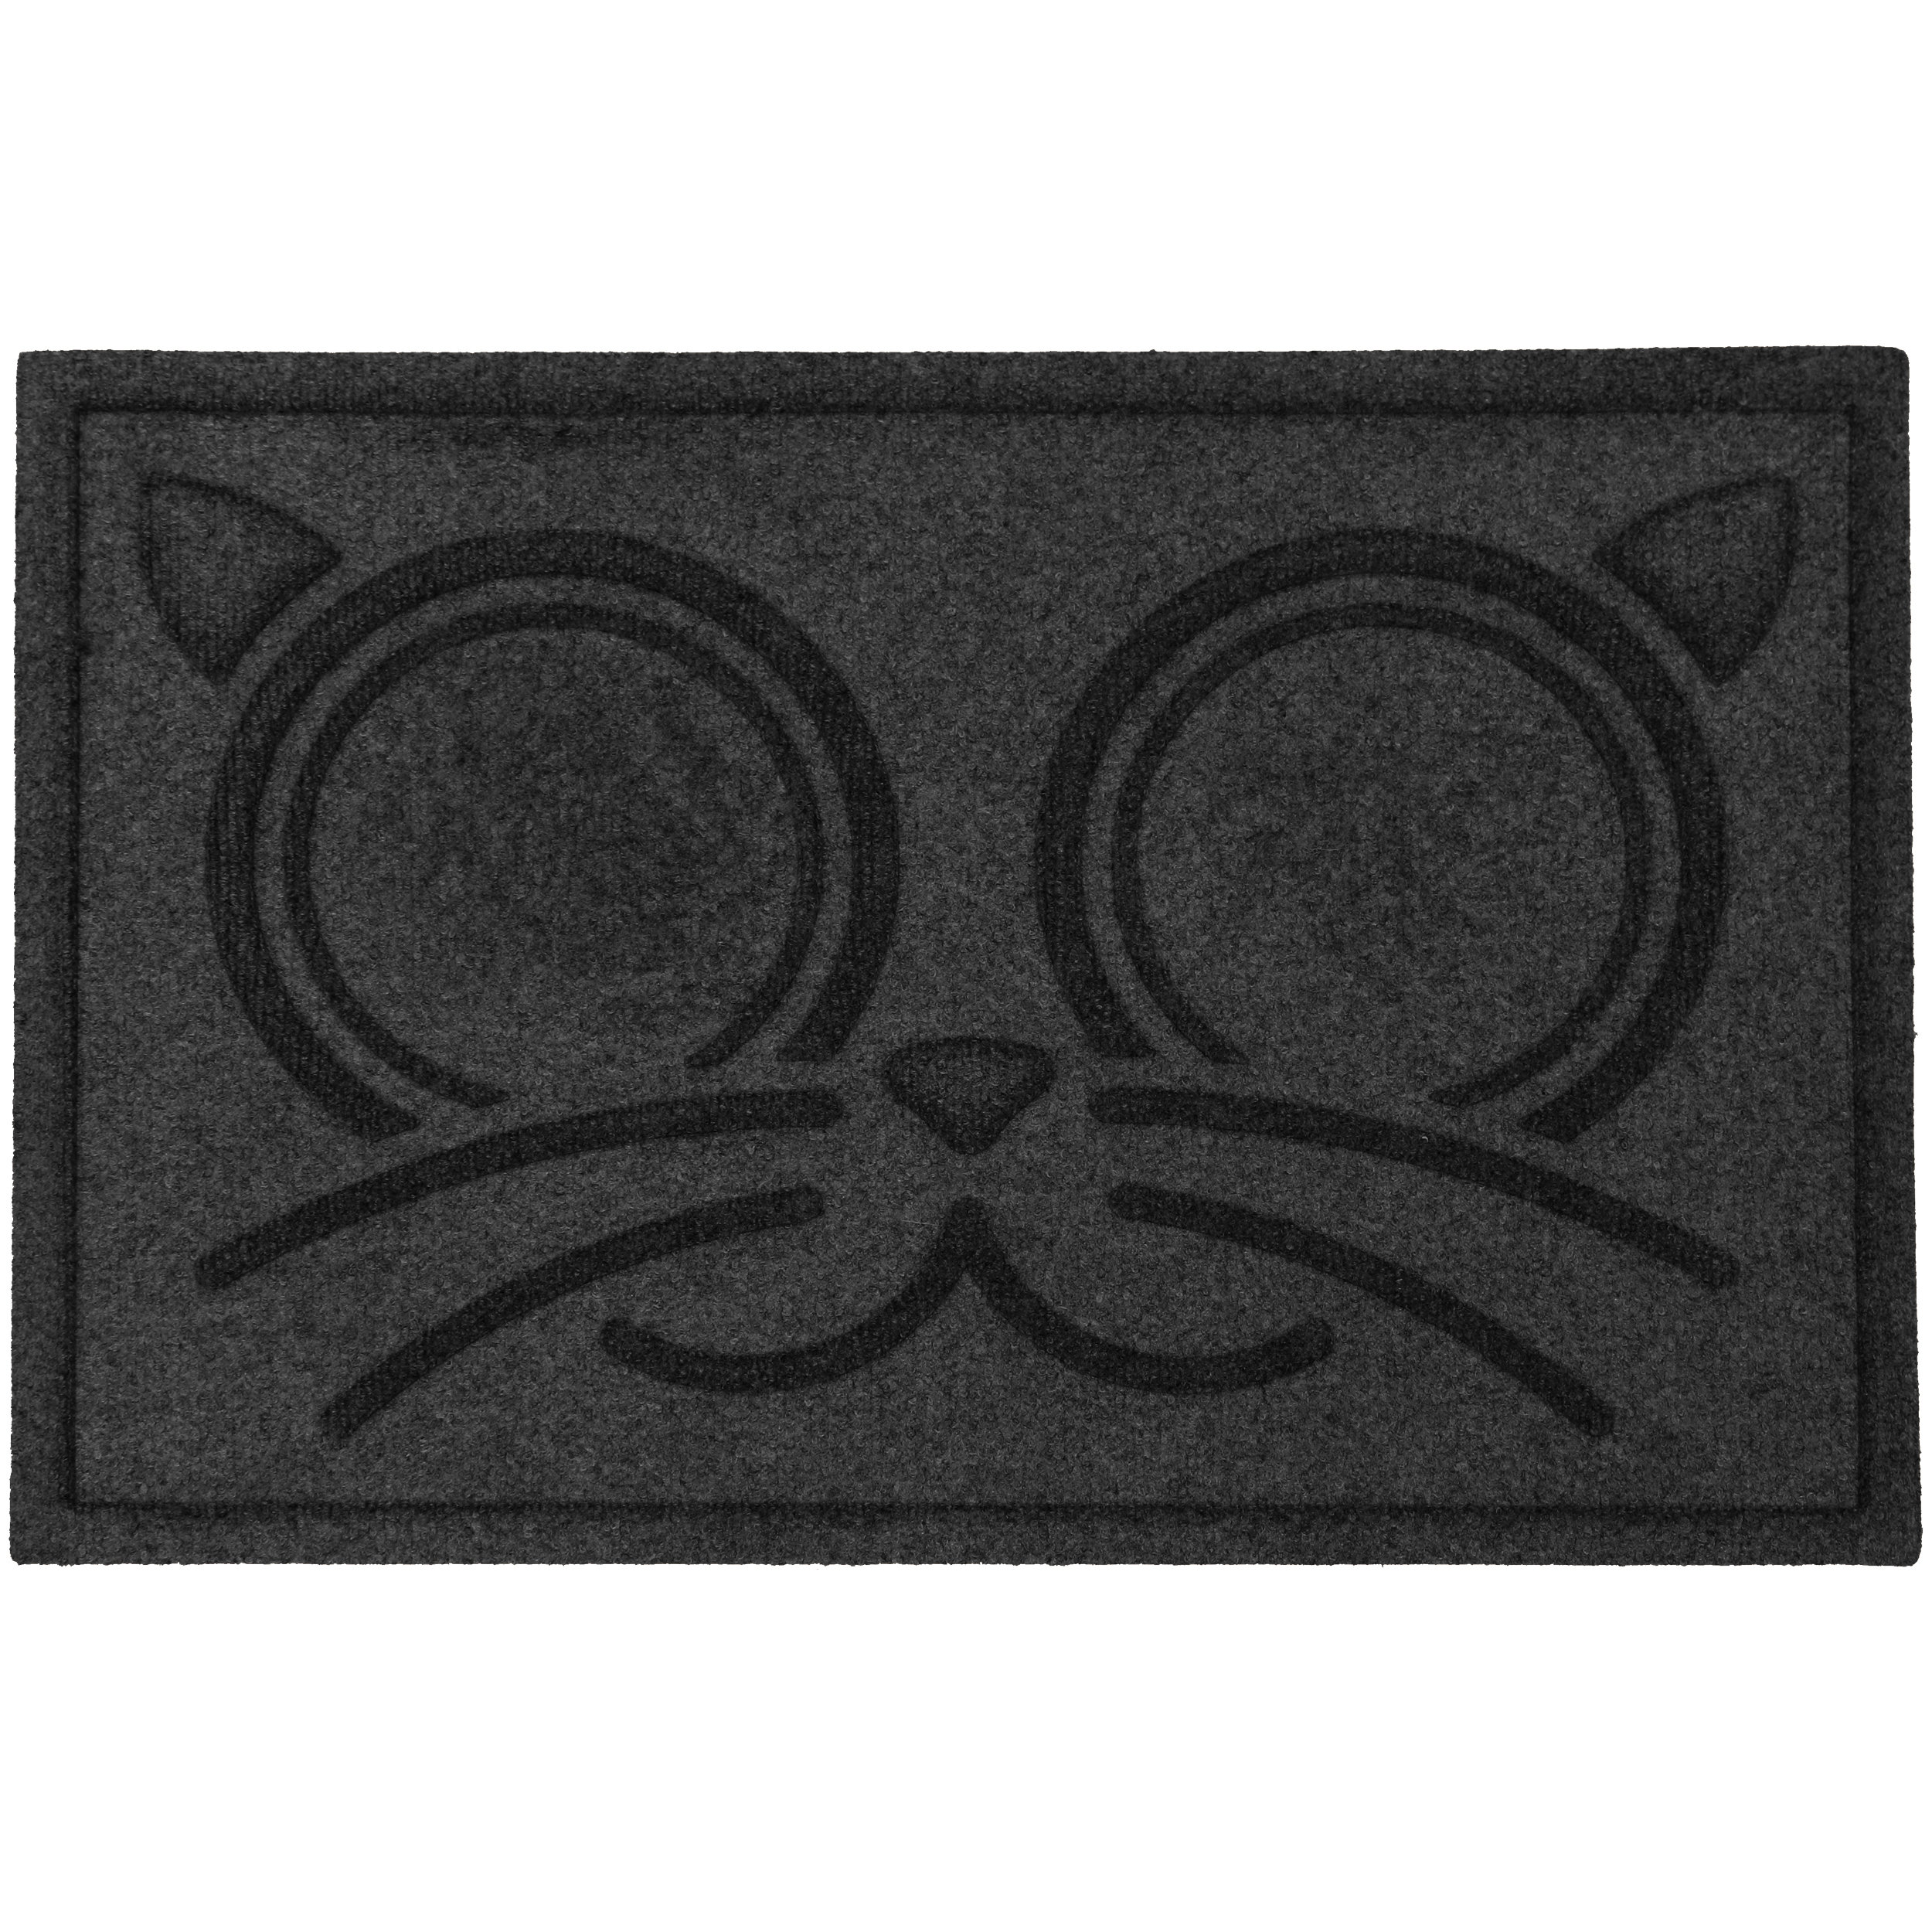 https://assets.wfcdn.com/im/78048518/compr-r85/2484/248466239/waterhog-kitty-face-cat-bowl-feeder-placemat.jpg